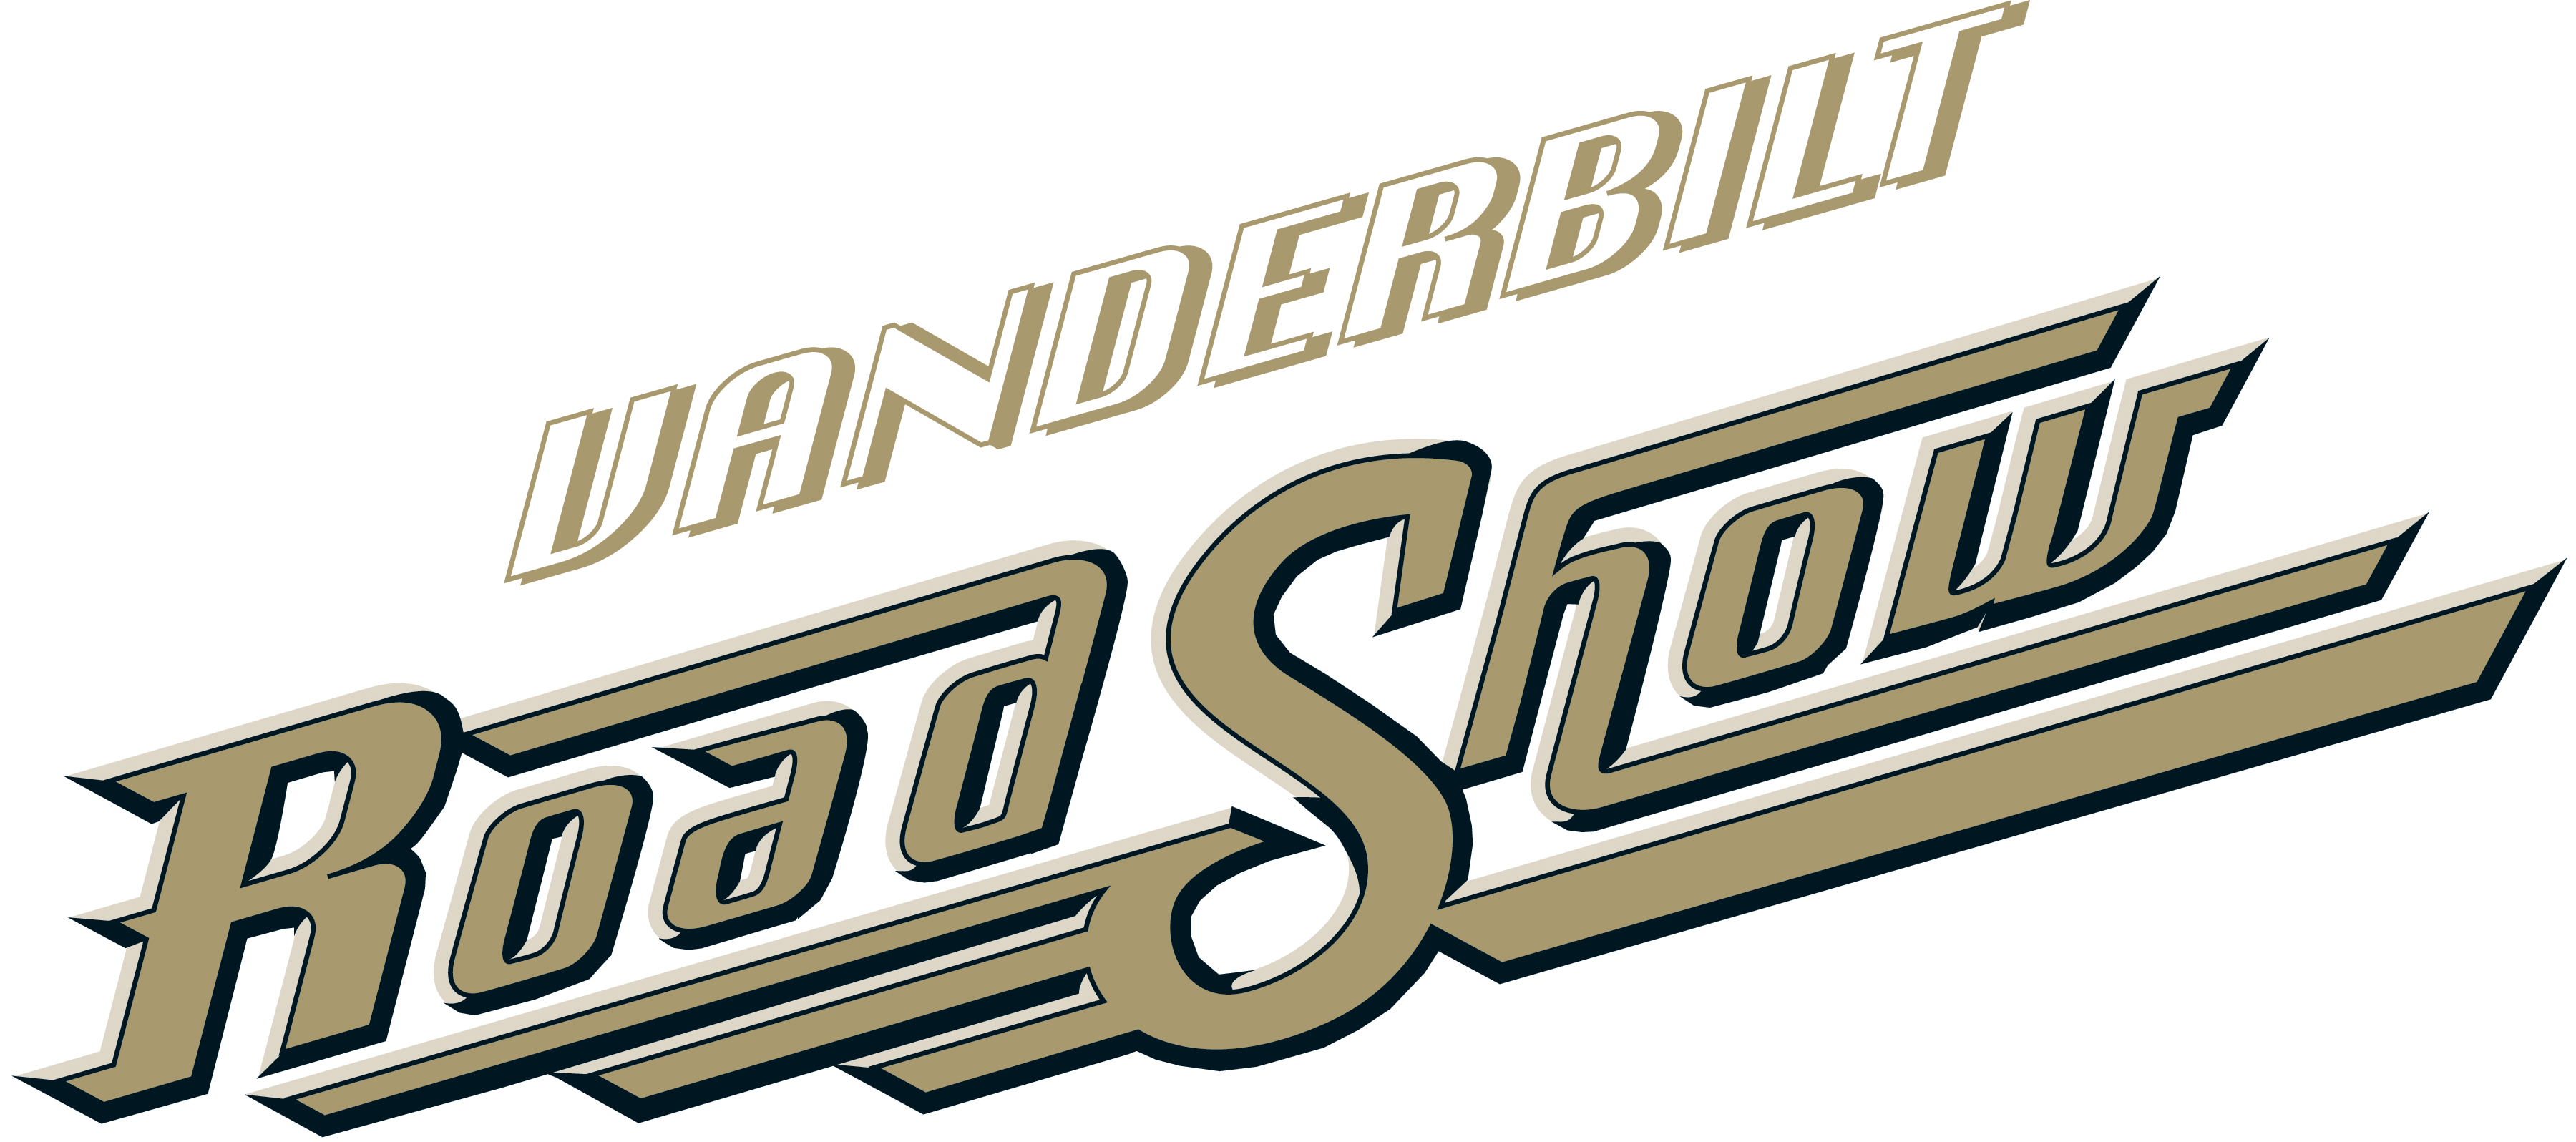 RS логотип. Vanderbilt лого. Тяжёлая поездка логотип.